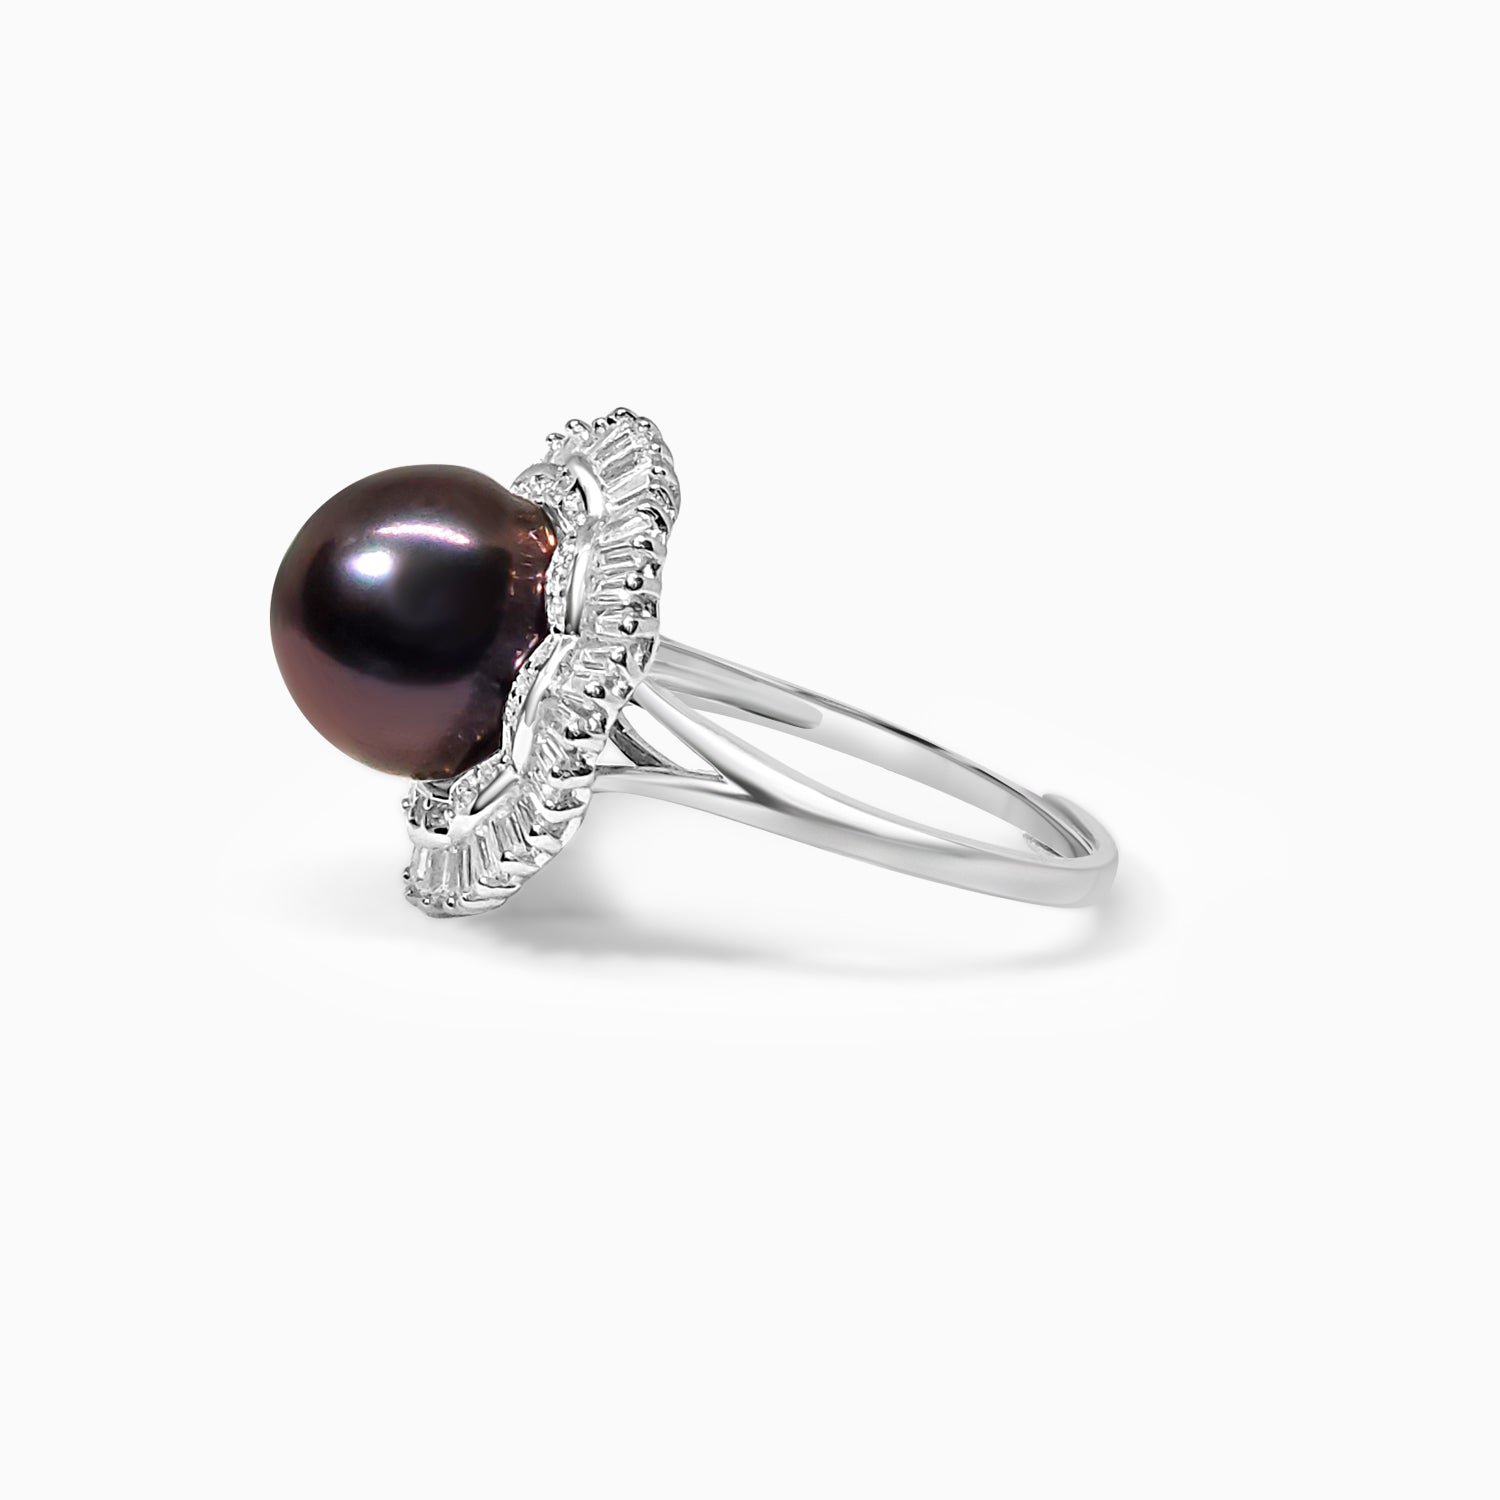 Silver Sparkling Black Pearl Empress Adjustable Ring